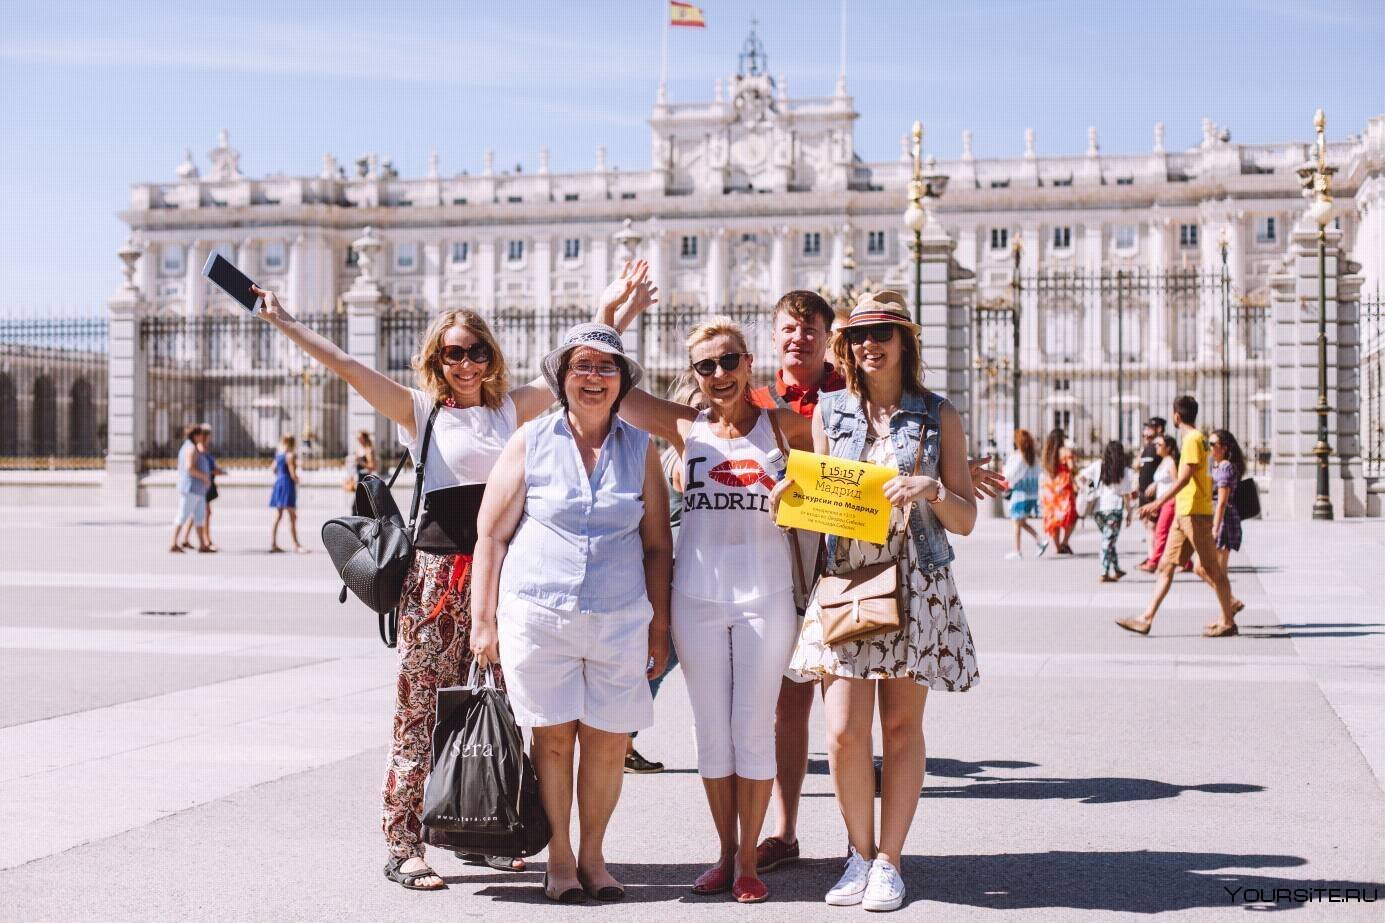 Мадрид погода сегодня. Туристы в Мадриде. Мадрид люди на улице. Мадрид туризм. Испания туризм.